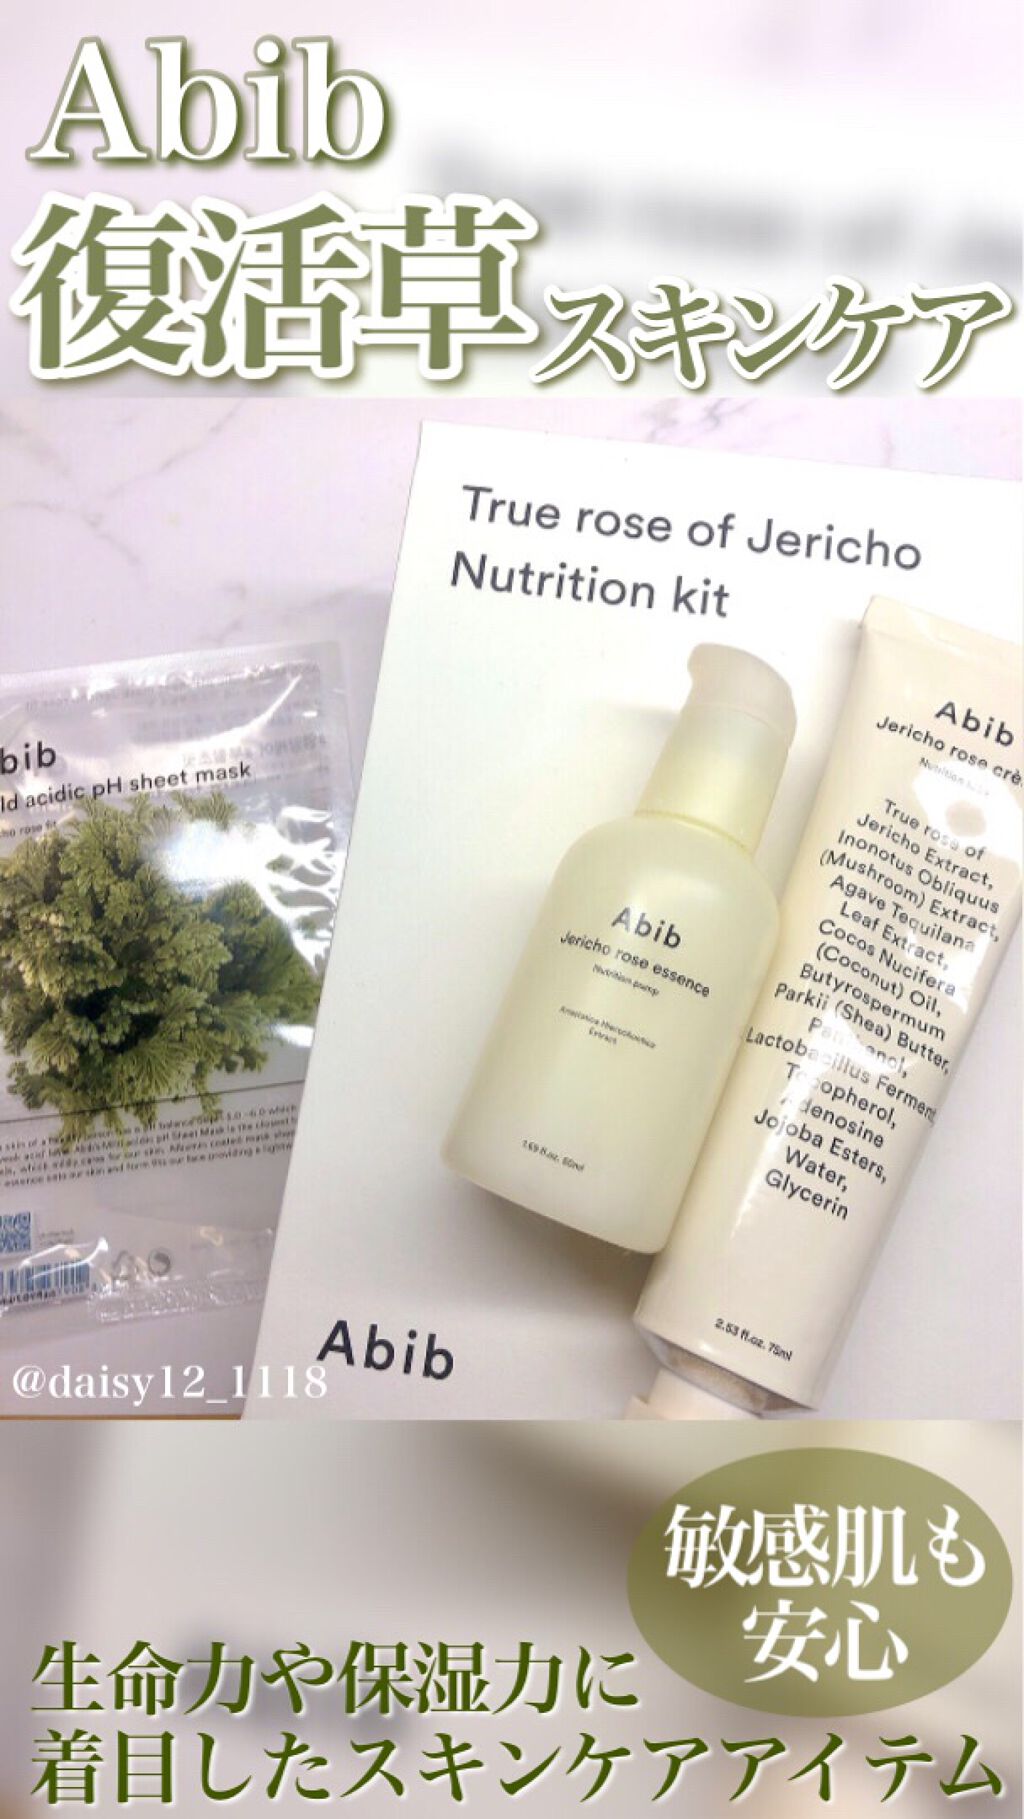 試してみた】Mild acidic pH sheet mask Jericho rose fit／Abib | LIPS